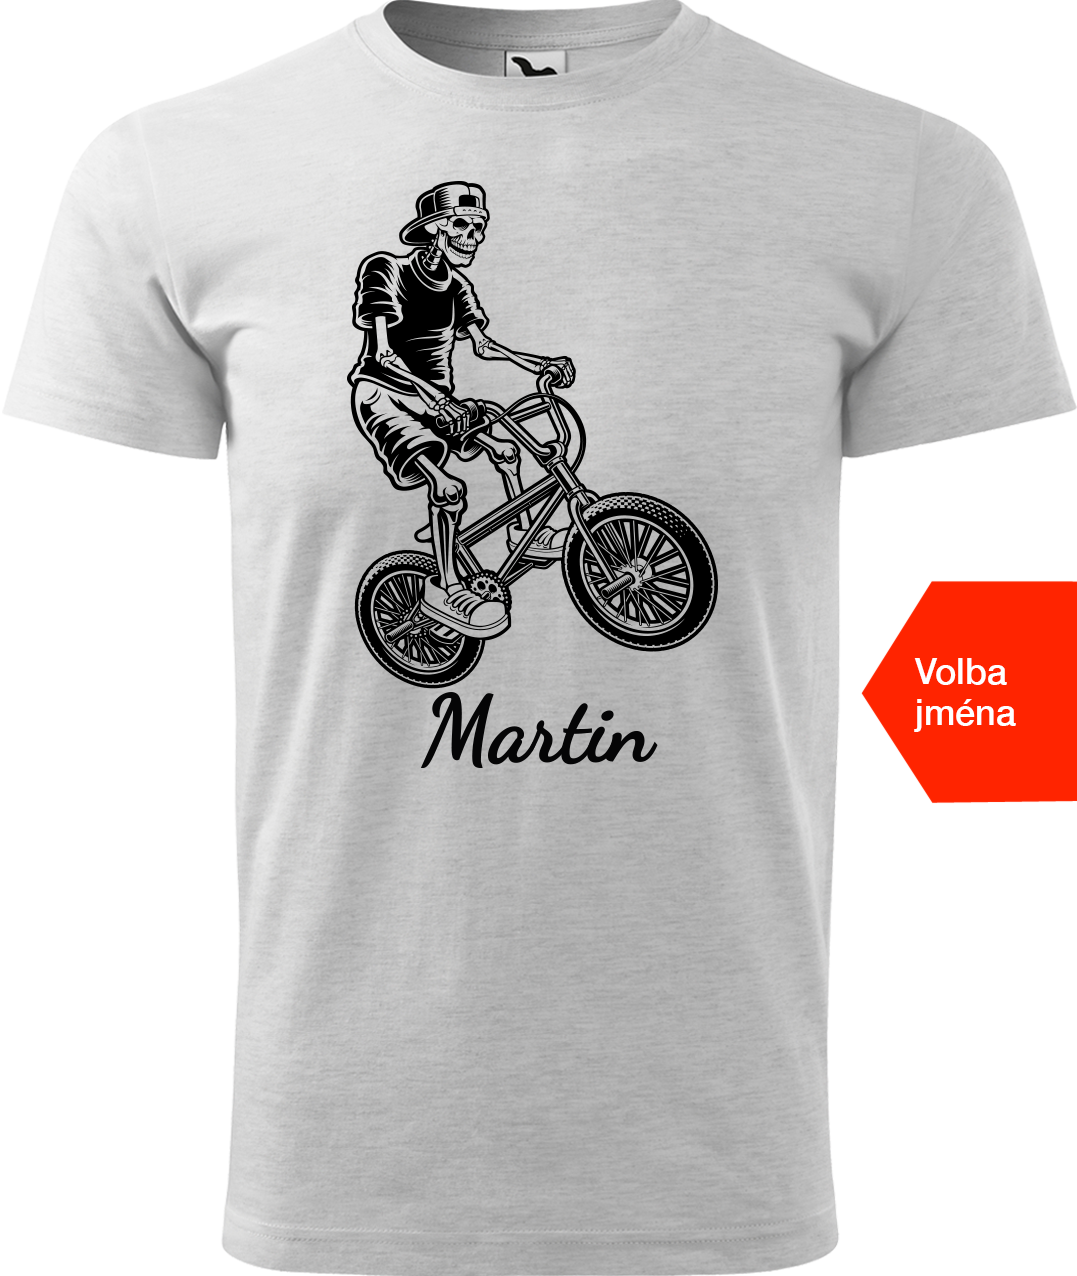 Pánské tričko s kolem a jménem - Trial Bike Velikost: M, Barva: Světle šedý melír (03)